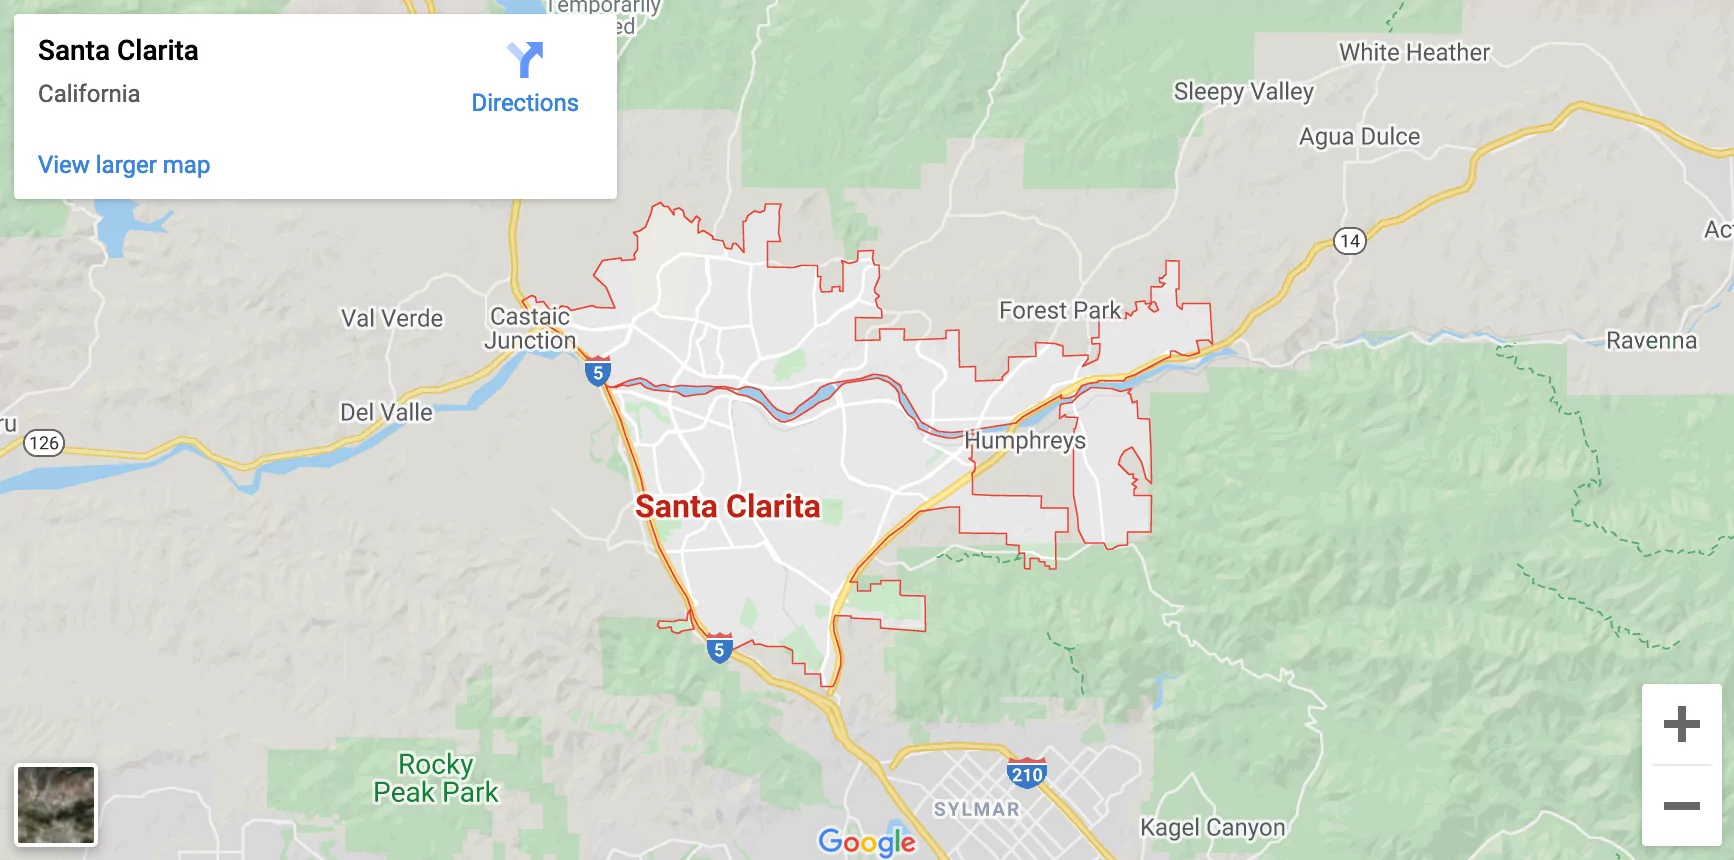 Santa Clarita, CA